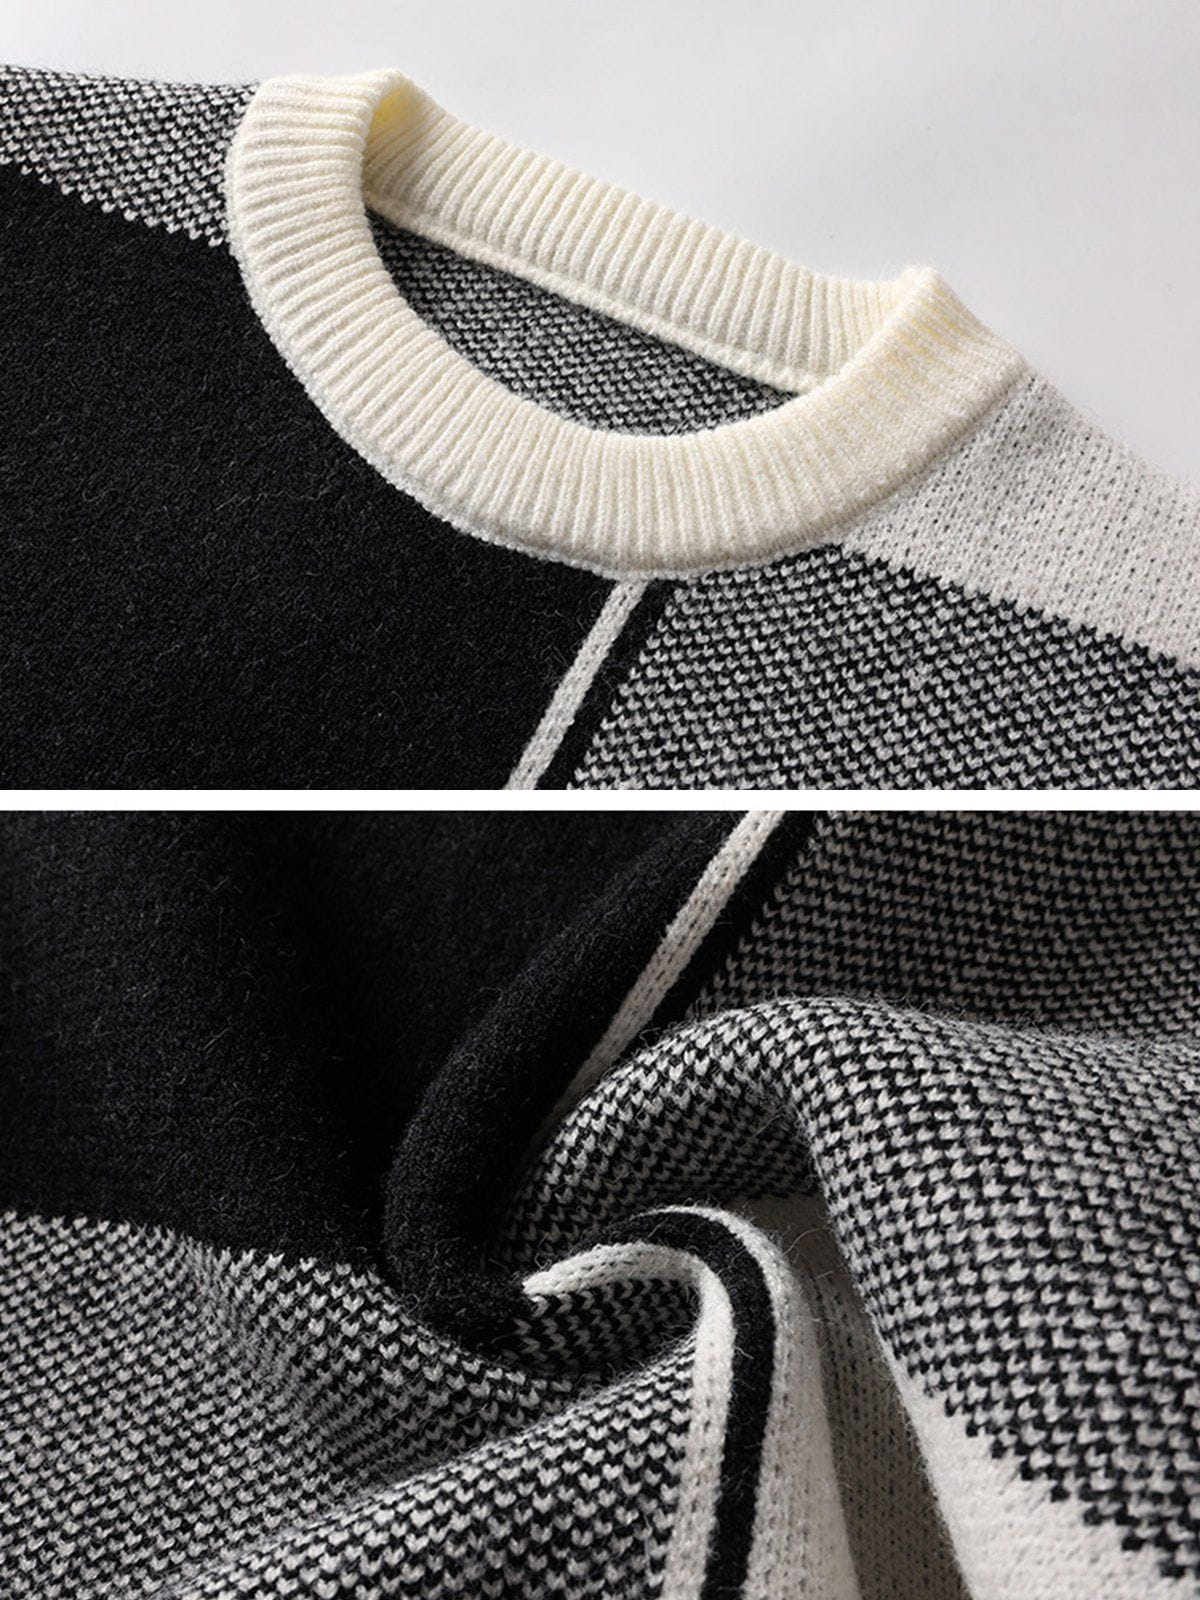 Eprezzy® - Irregular Contrast Color Plaid Knit Sweater Streetwear Fashion - eprezzy.com